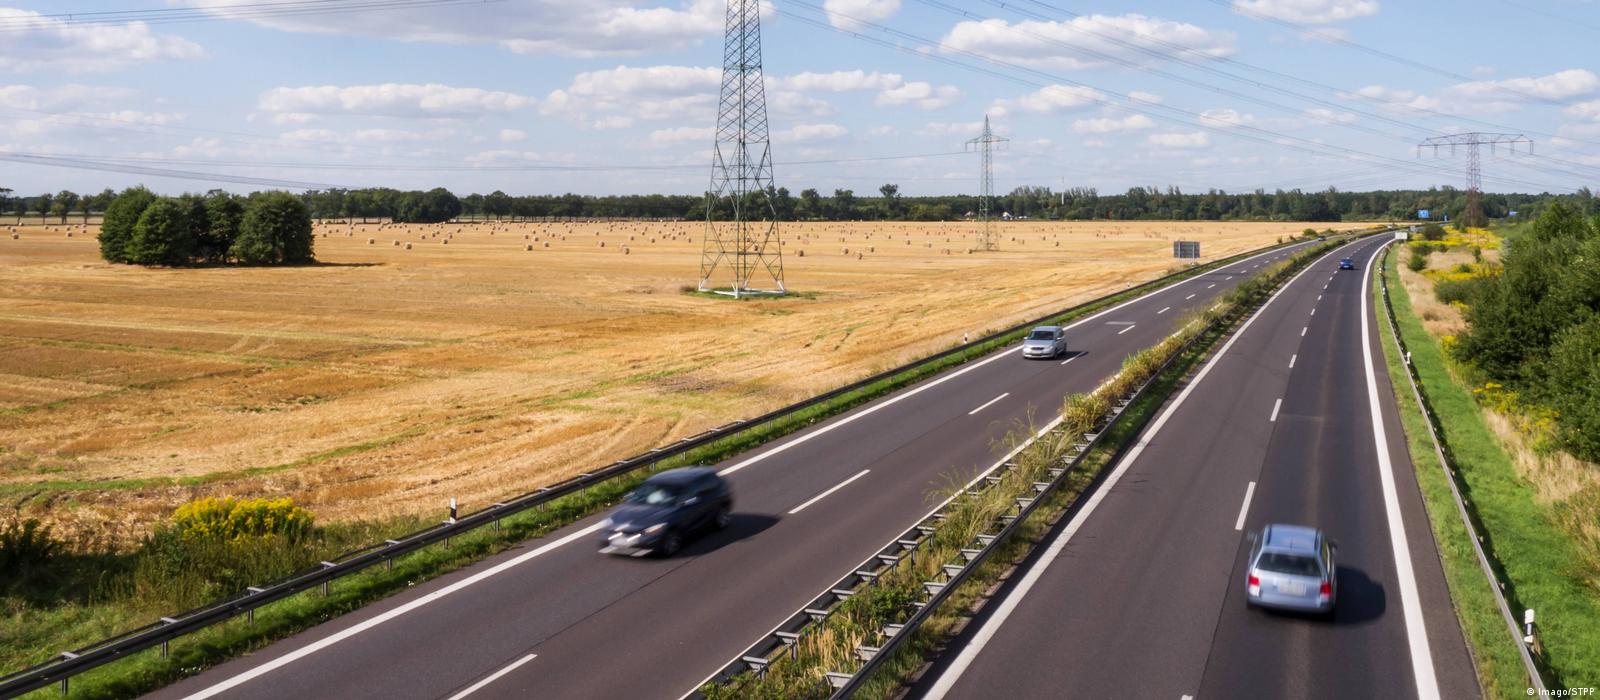 Sự thật ít người biết về Autobahn - &quot;đường cao tốc không giới hạn tốc độ&quot; ở Đức - Ảnh 2.